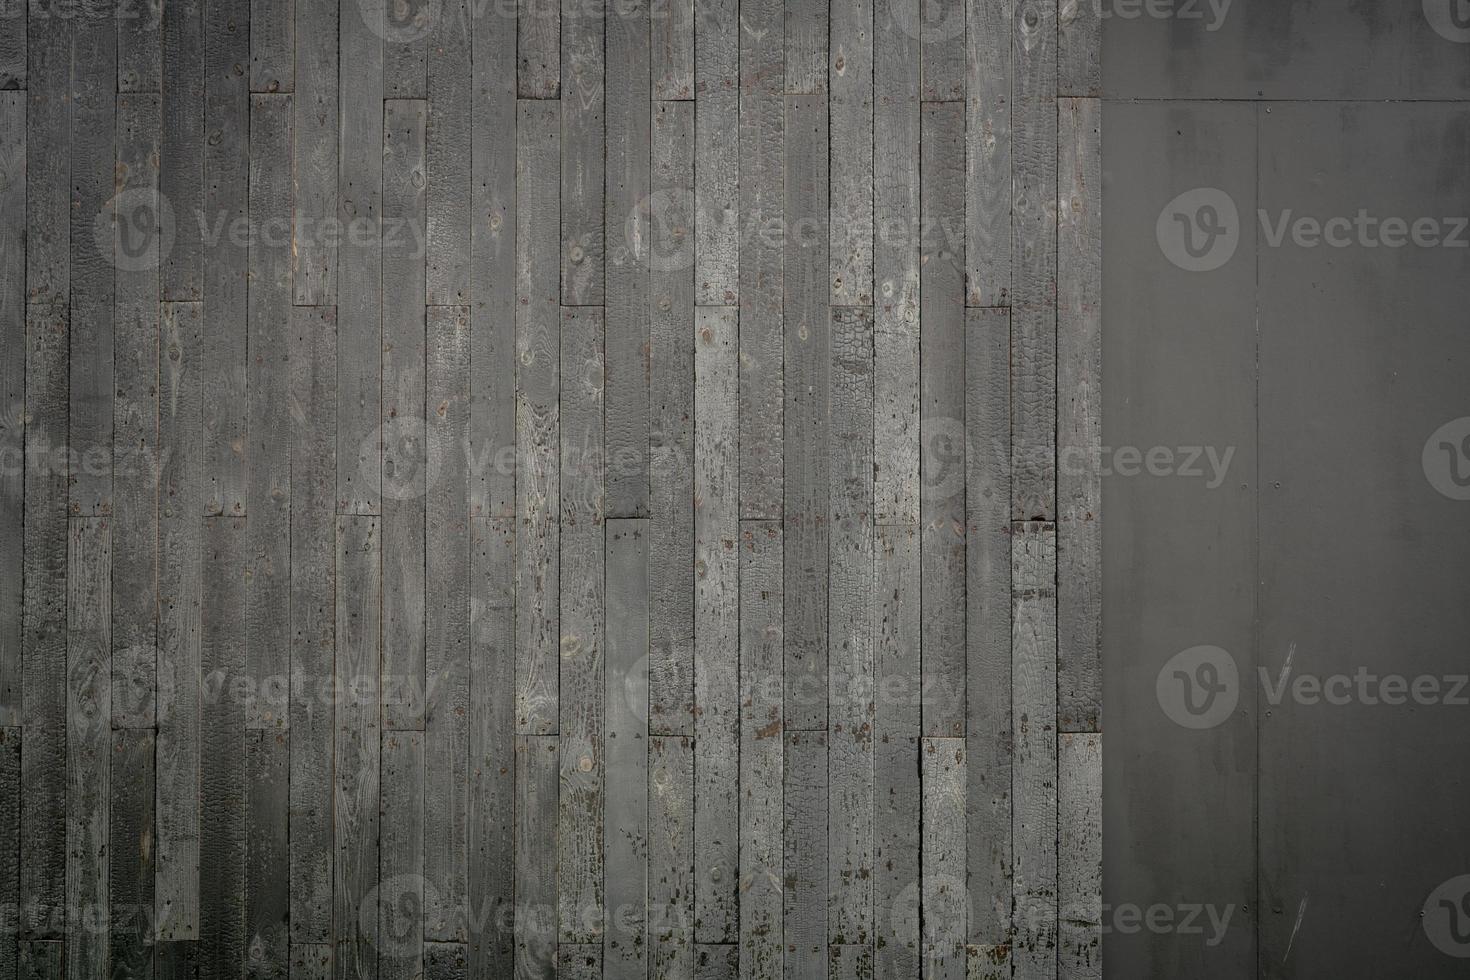 ovanifrån grå gamla trägolv textur bakgrund. trä planka ytstruktur bakgrund. grå trätapet för sorg och död. timmer trävägg textur bakgrund. inredningsdesign. vittrat trä. foto